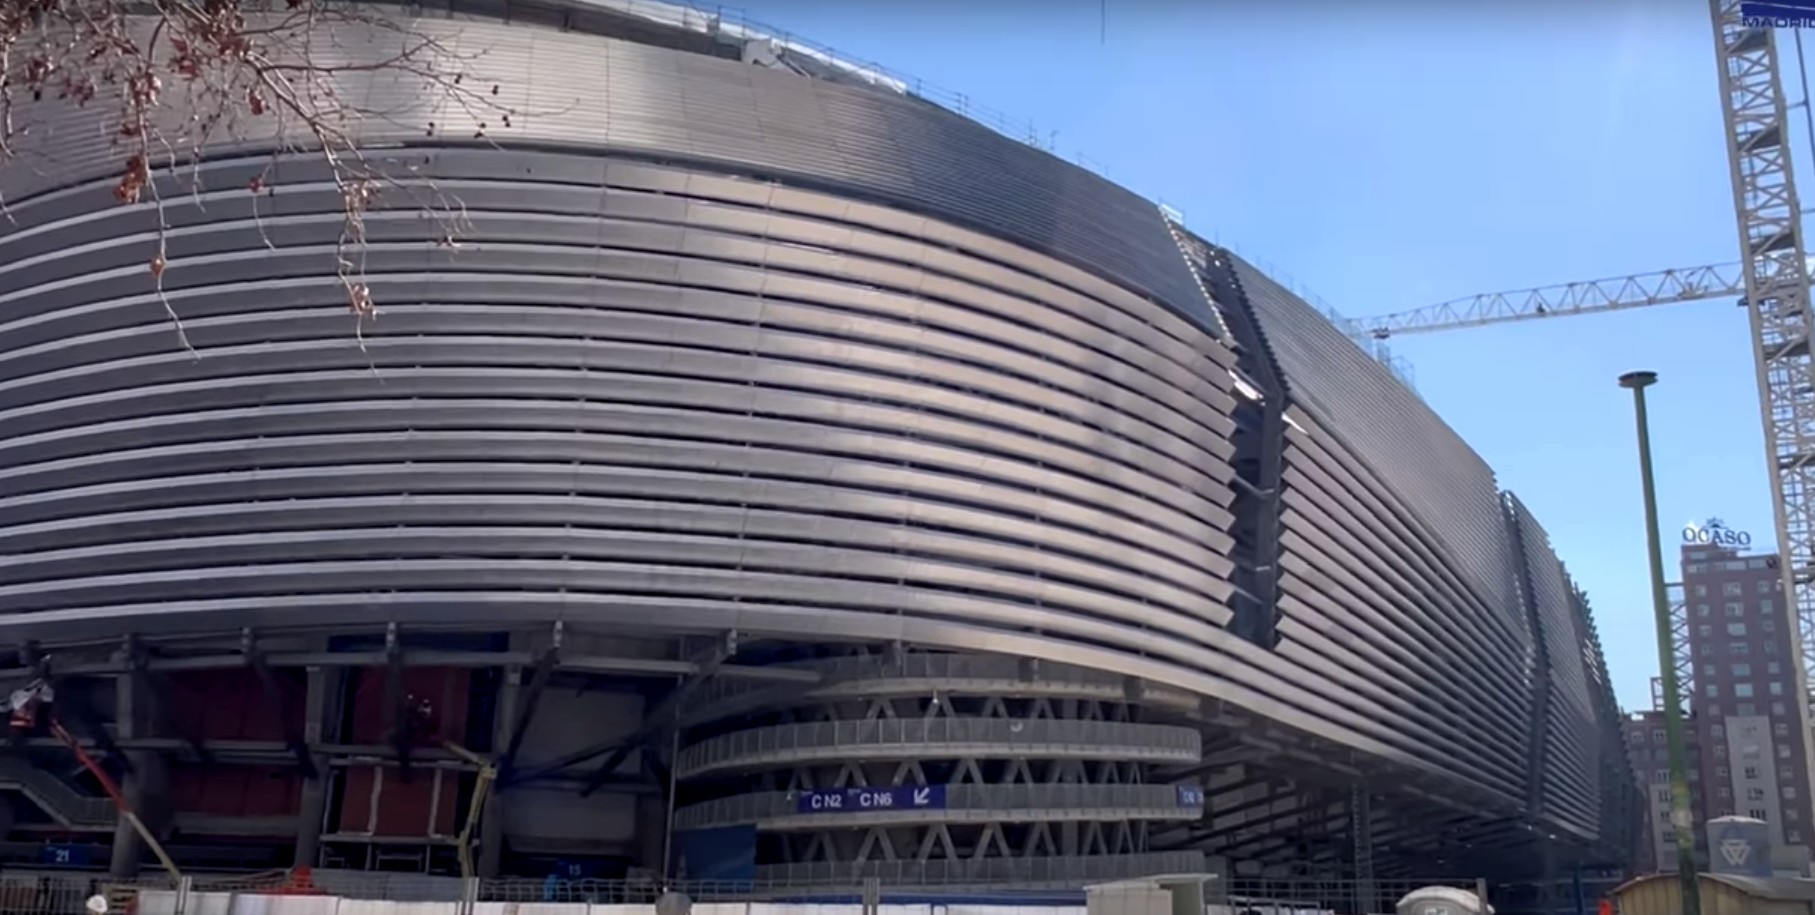 Las obras del Bernabéu avanzan a pasos agigantados: el aspecto futurista va tomando forma